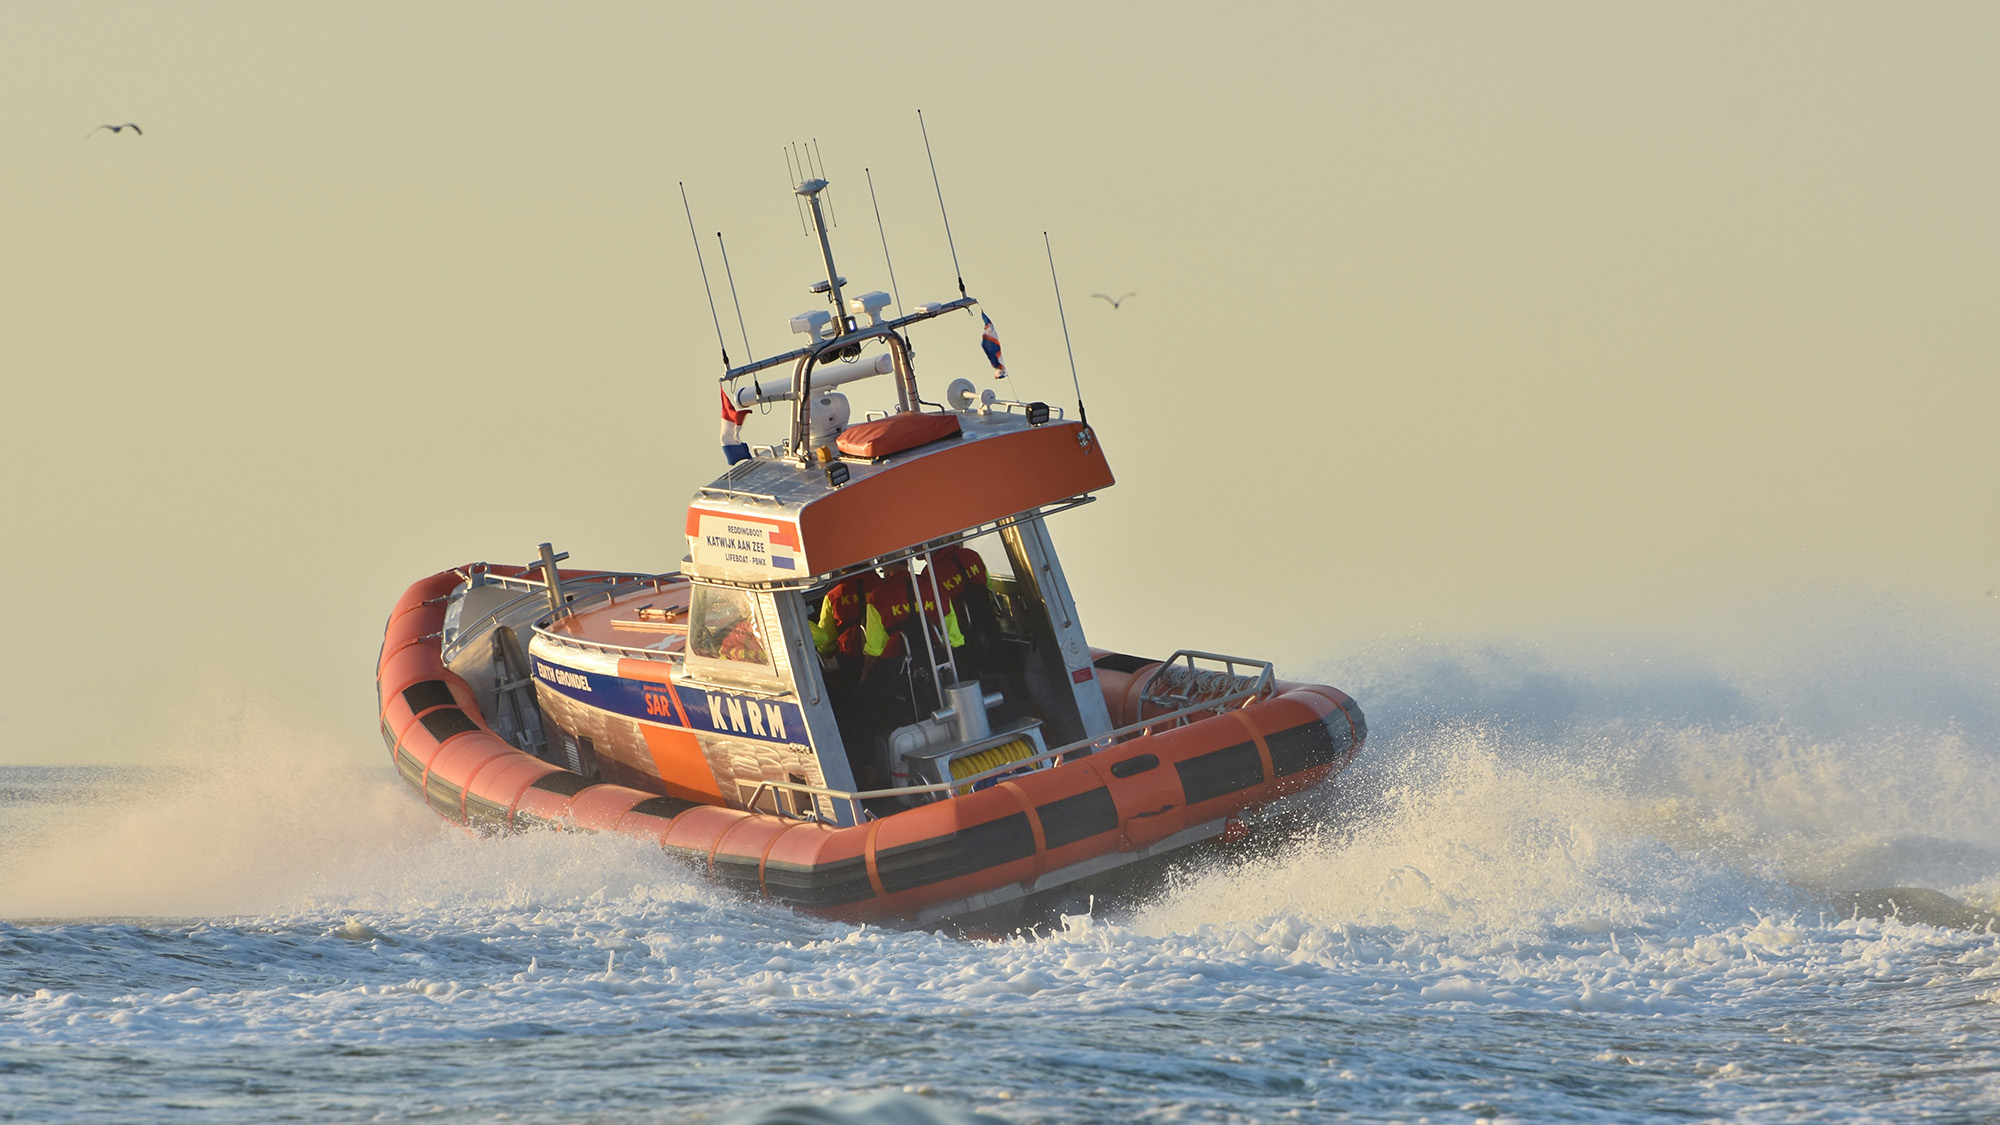 KNRM reddingboot Katwijk aan Zee - foto Gert-Jan Onderwater_newsroom 2.jpg